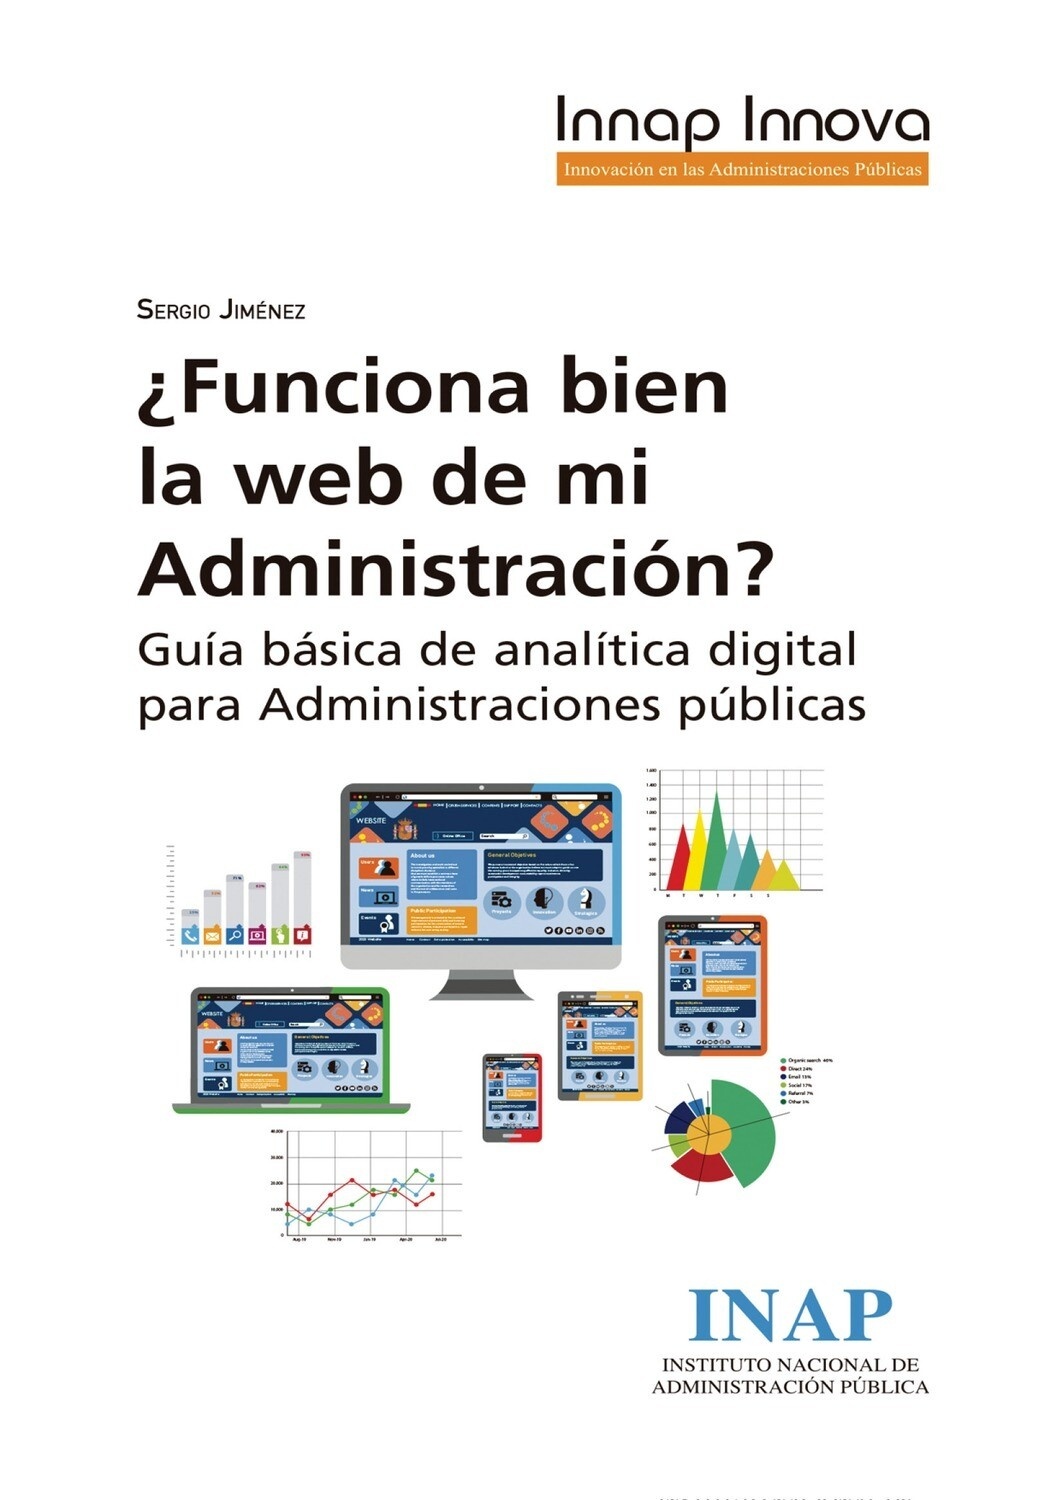 ¿Funciona bien la web de mi administración? Guía básica de analítica digital para administraciones públicas